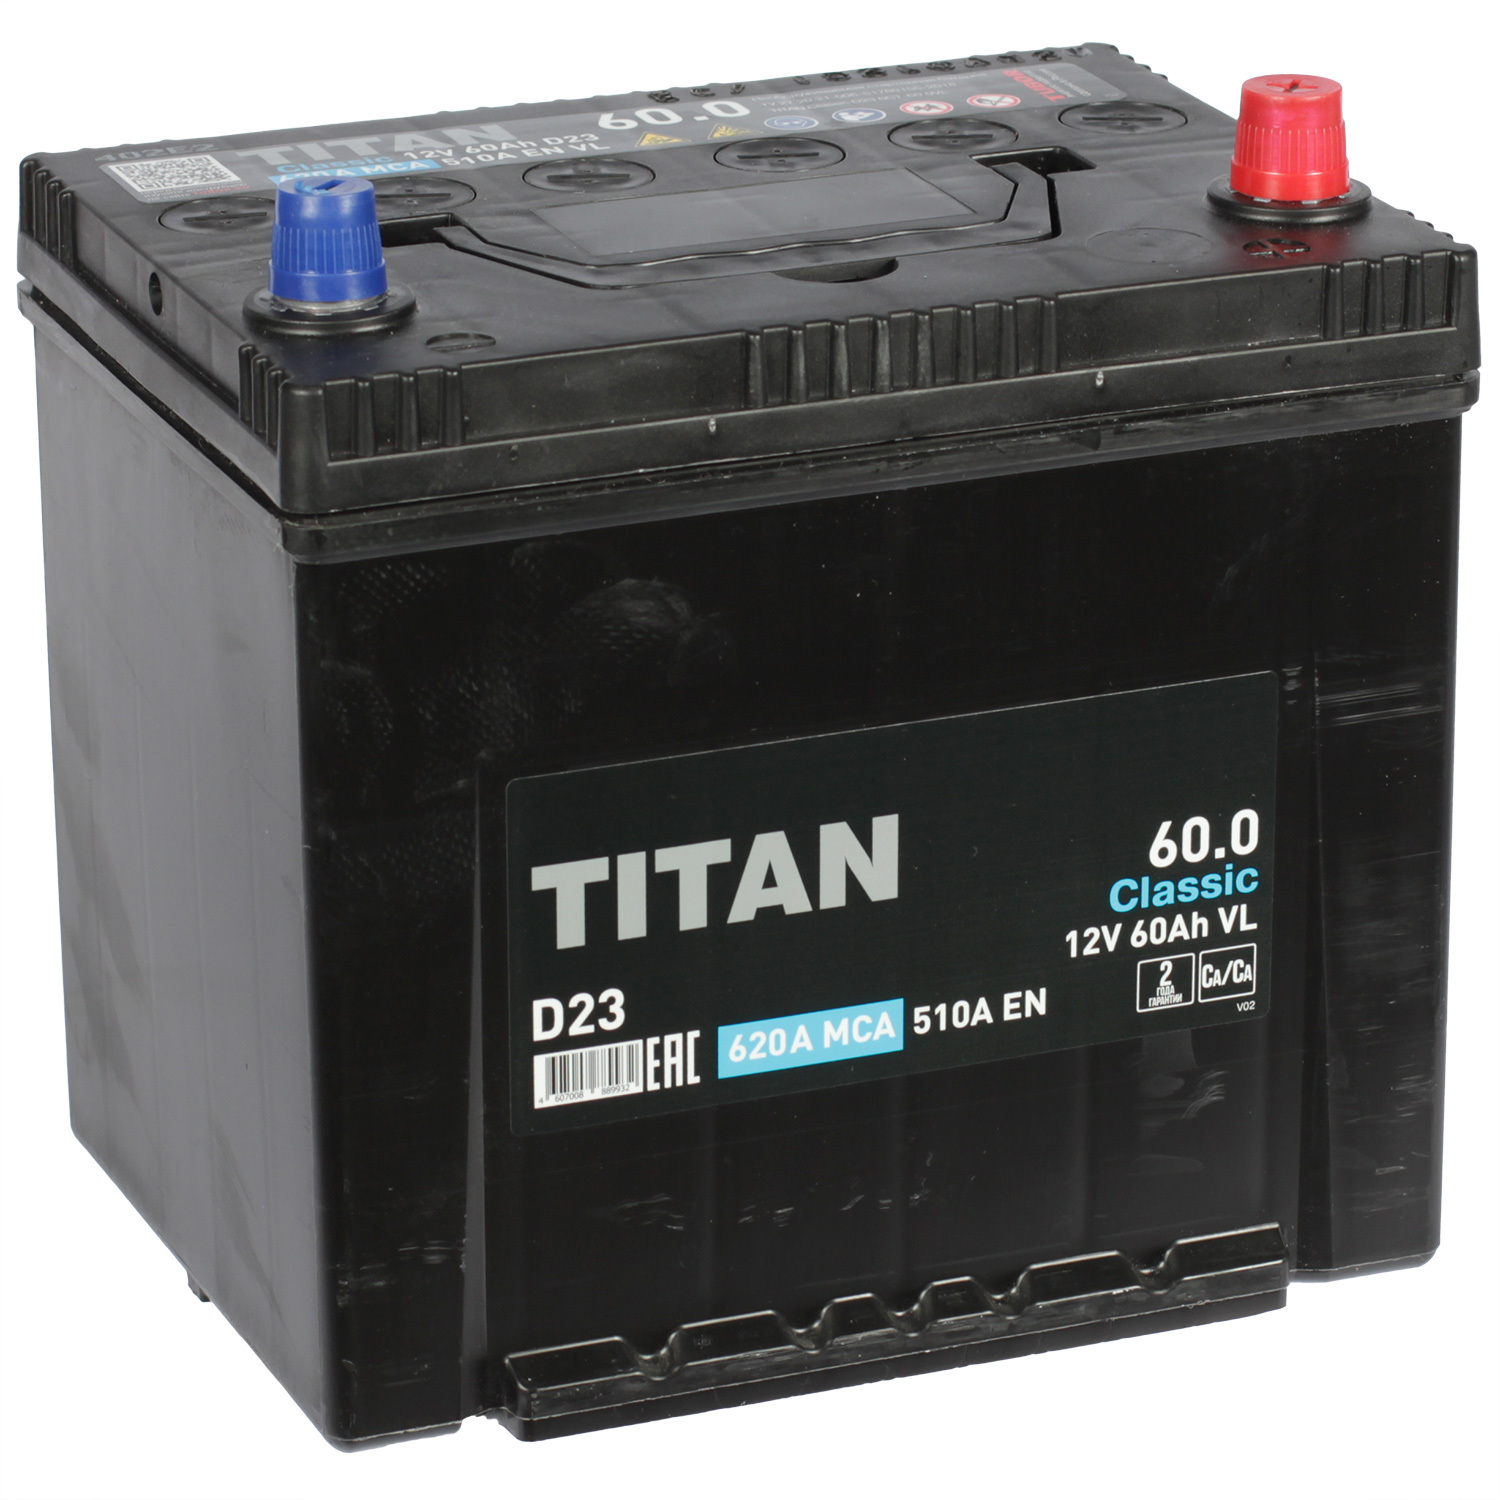 Titan Автомобильный аккумулятор Titan 60 Ач обратная полярность D23L titan автомобильный аккумулятор titan 60 ач обратная полярность l2